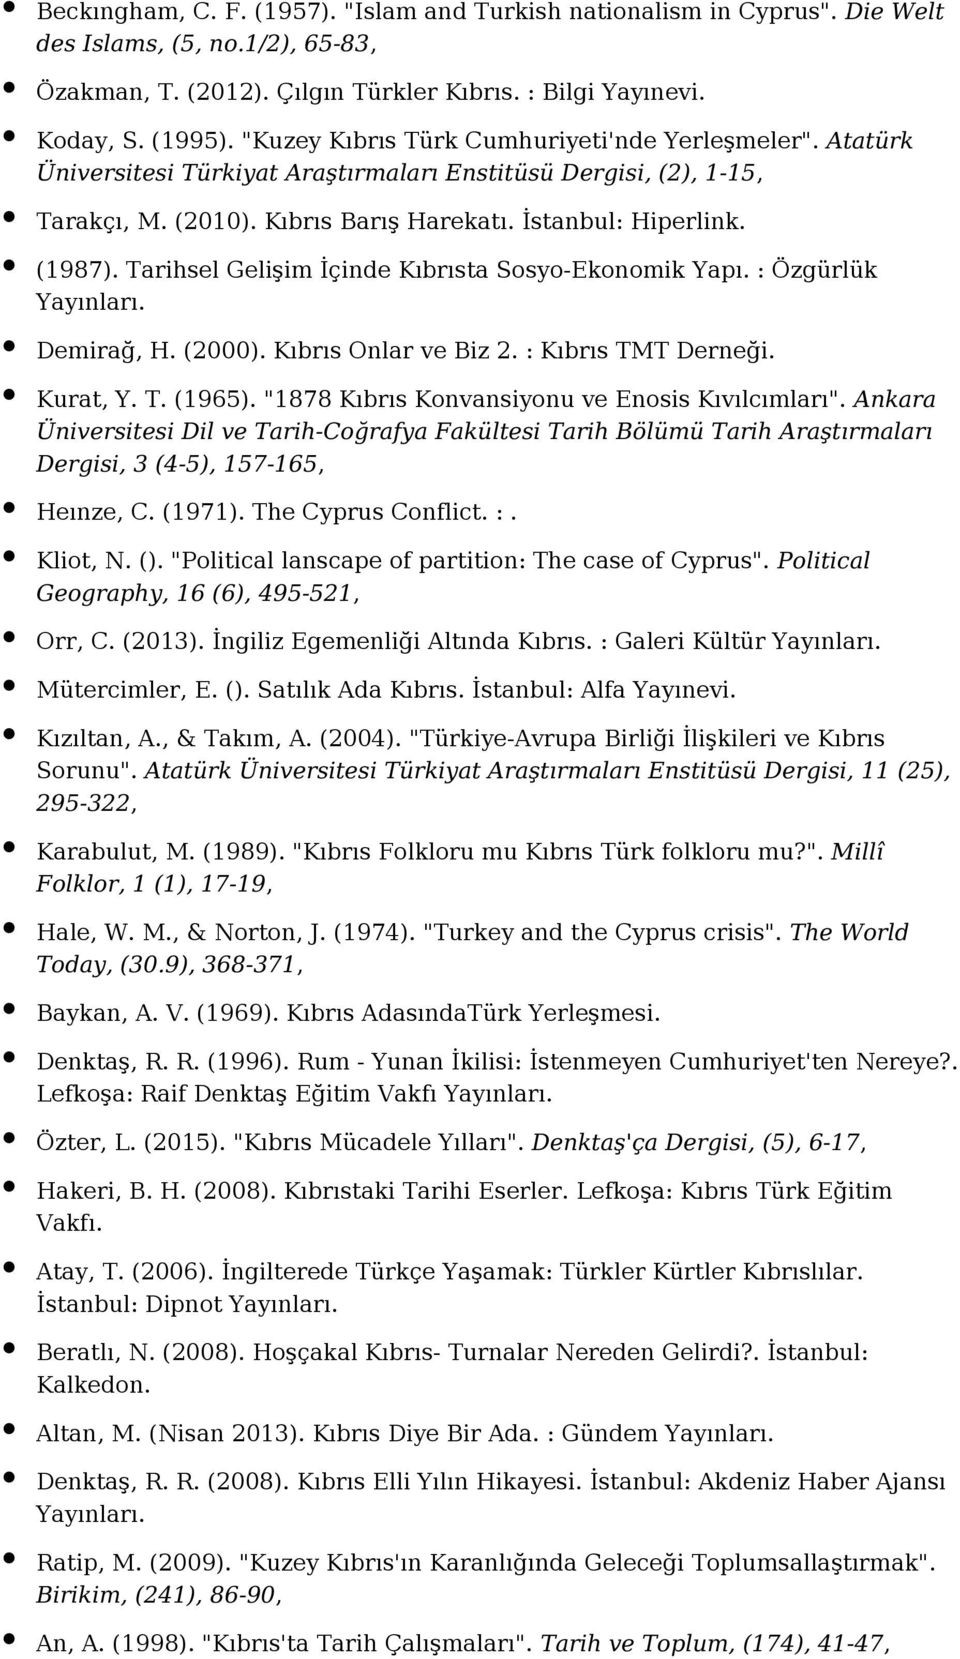 Tarihsel Gelişim İçinde Kıbrısta Sosyo-Ekonomik Yapı. : Özgürlük Demirağ, H. (2000). Kıbrıs Onlar ve Biz 2. : Kıbrıs TMT Derneği. Kurat, Y. T. (1965).